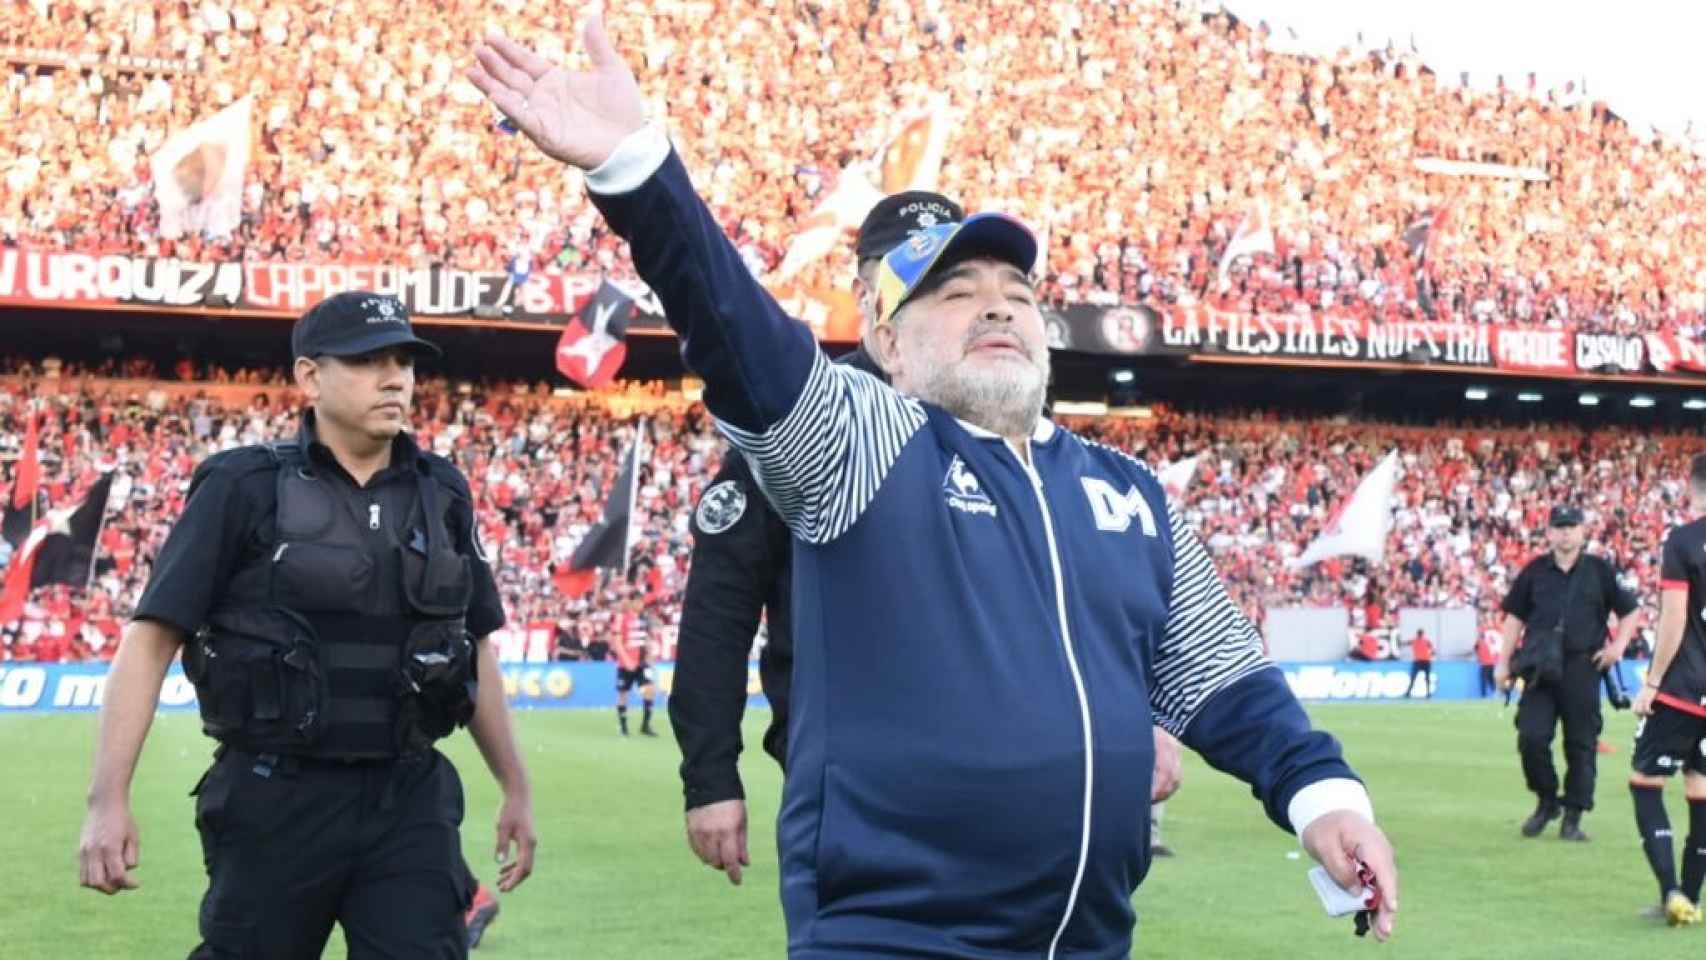 Como si fuese un dios: así reciben a Maradona en el estadio del Newell's